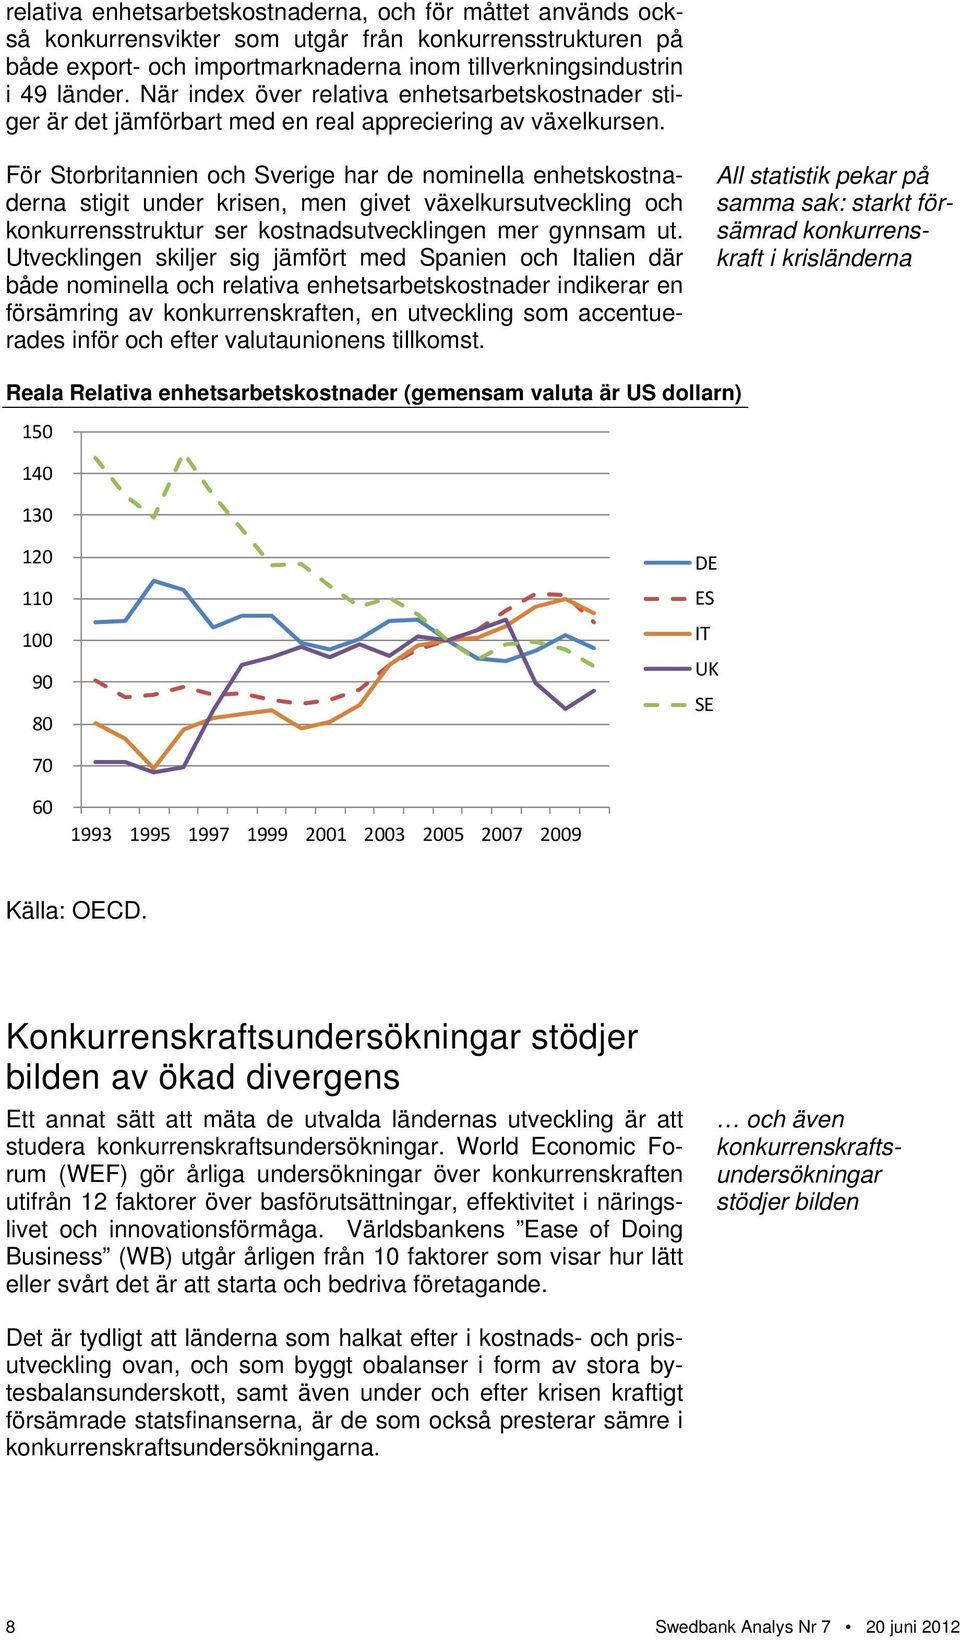 För Storbritannien och Sverige har de nominella enhetskostnaderna stigit under krisen, men givet växelkursutveckling och konkurrensstruktur ser kostnadsutvecklingen mer gynnsam ut.